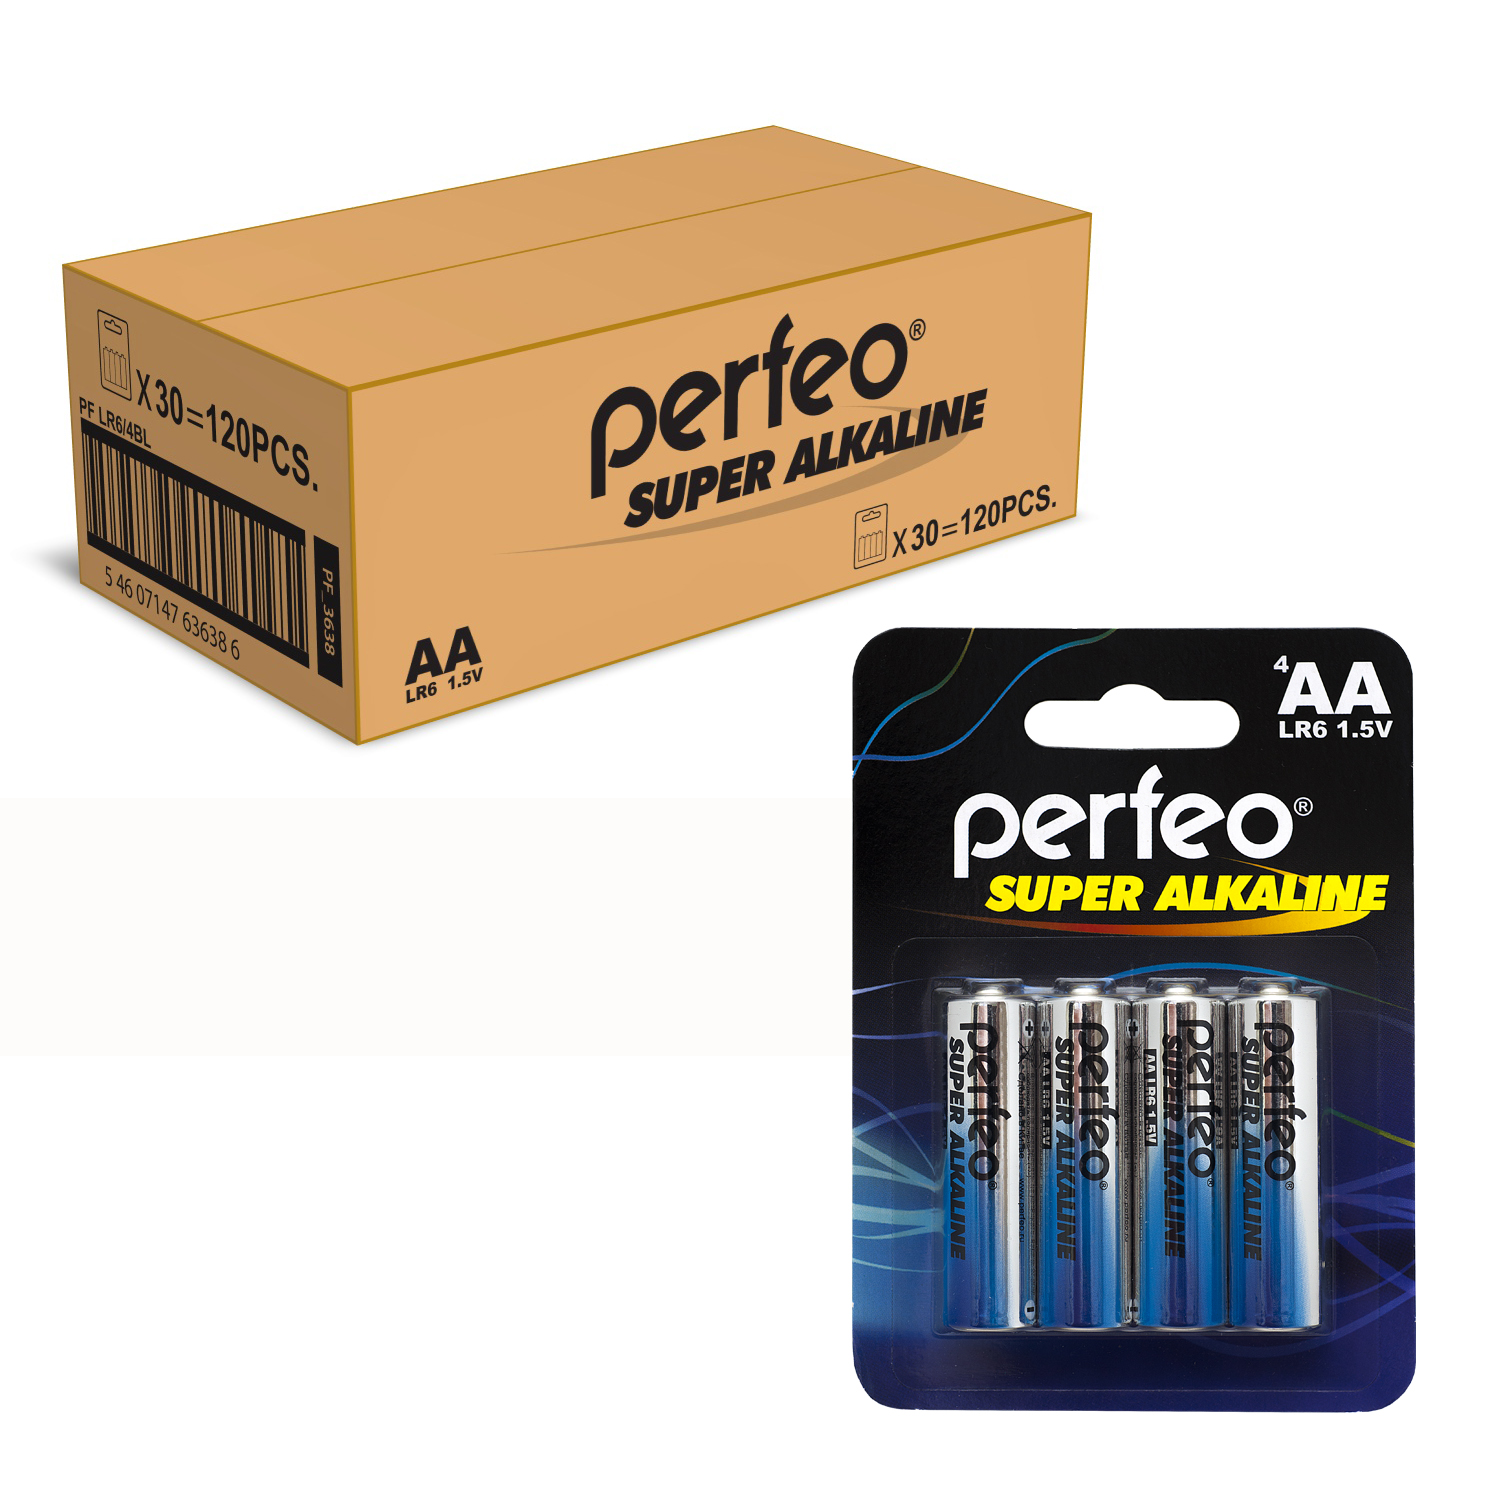 Батарейка Perfeo LR6/4BL Super Alkaline 120 шт батарейки perfeo super alkaline ааа lr03 отрывные 10 шт